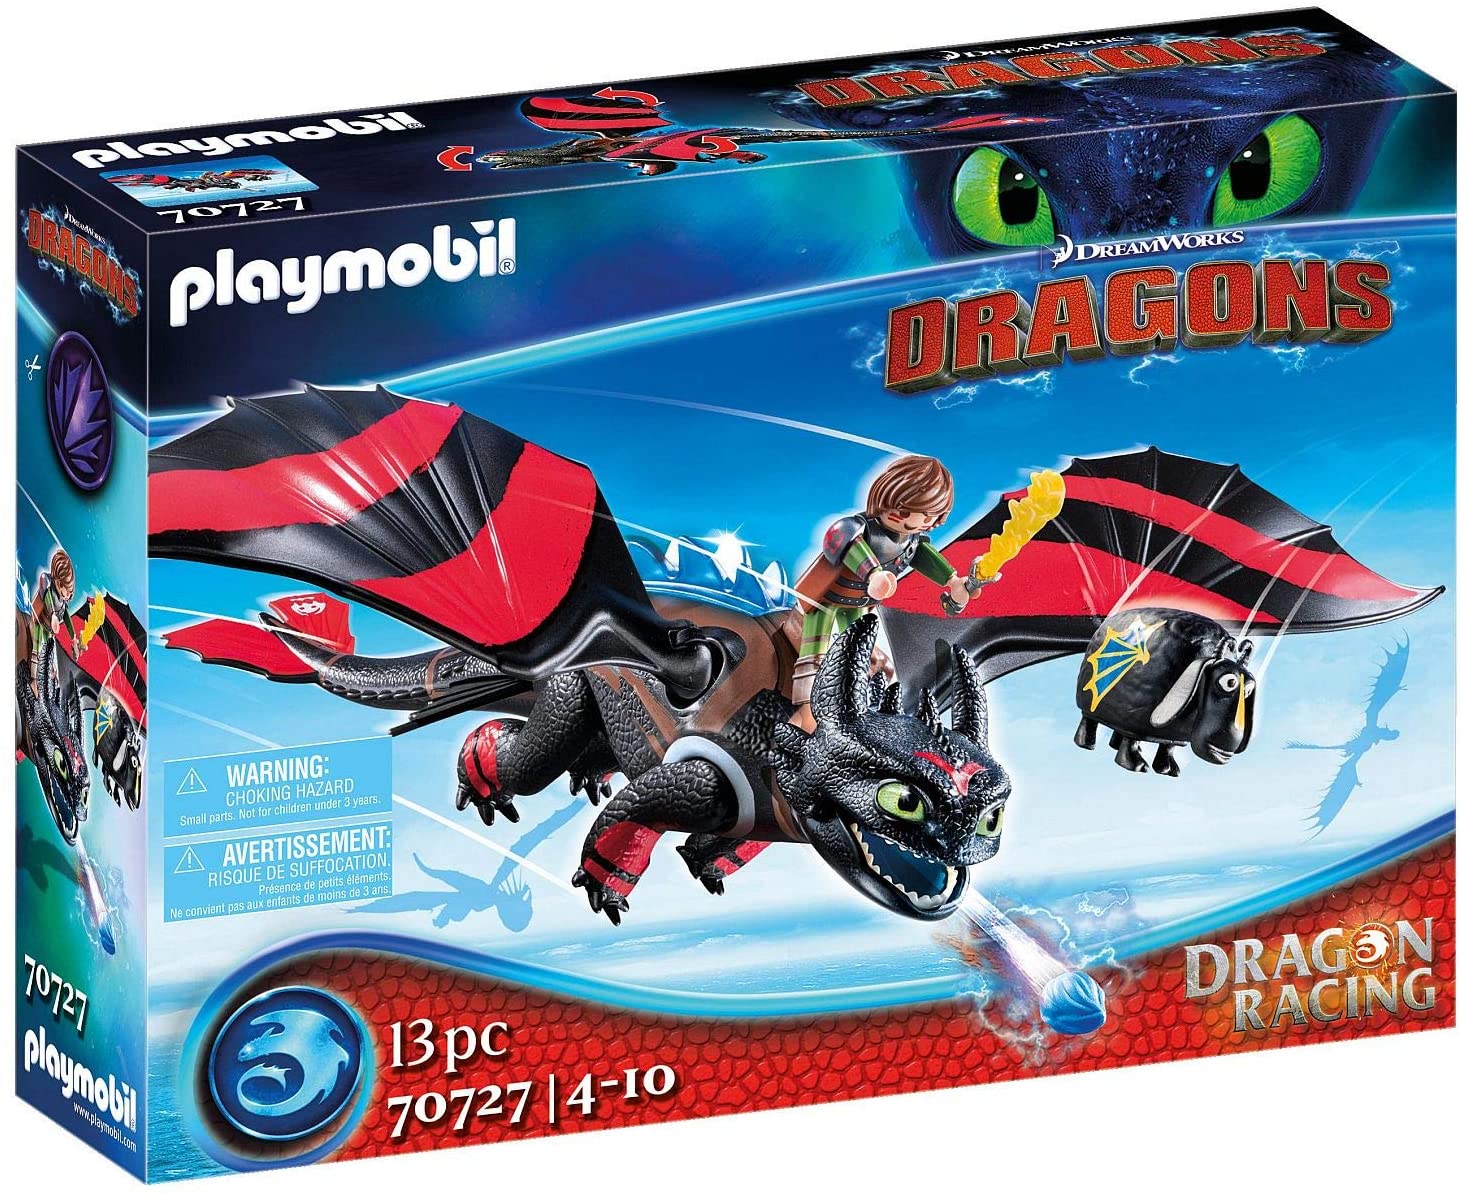 Bild zu Playmobil DreamWorks Dragons 70727 Dragon Racing mit Lichtmodul für 17,14€ (Vergleich: 19,95€)